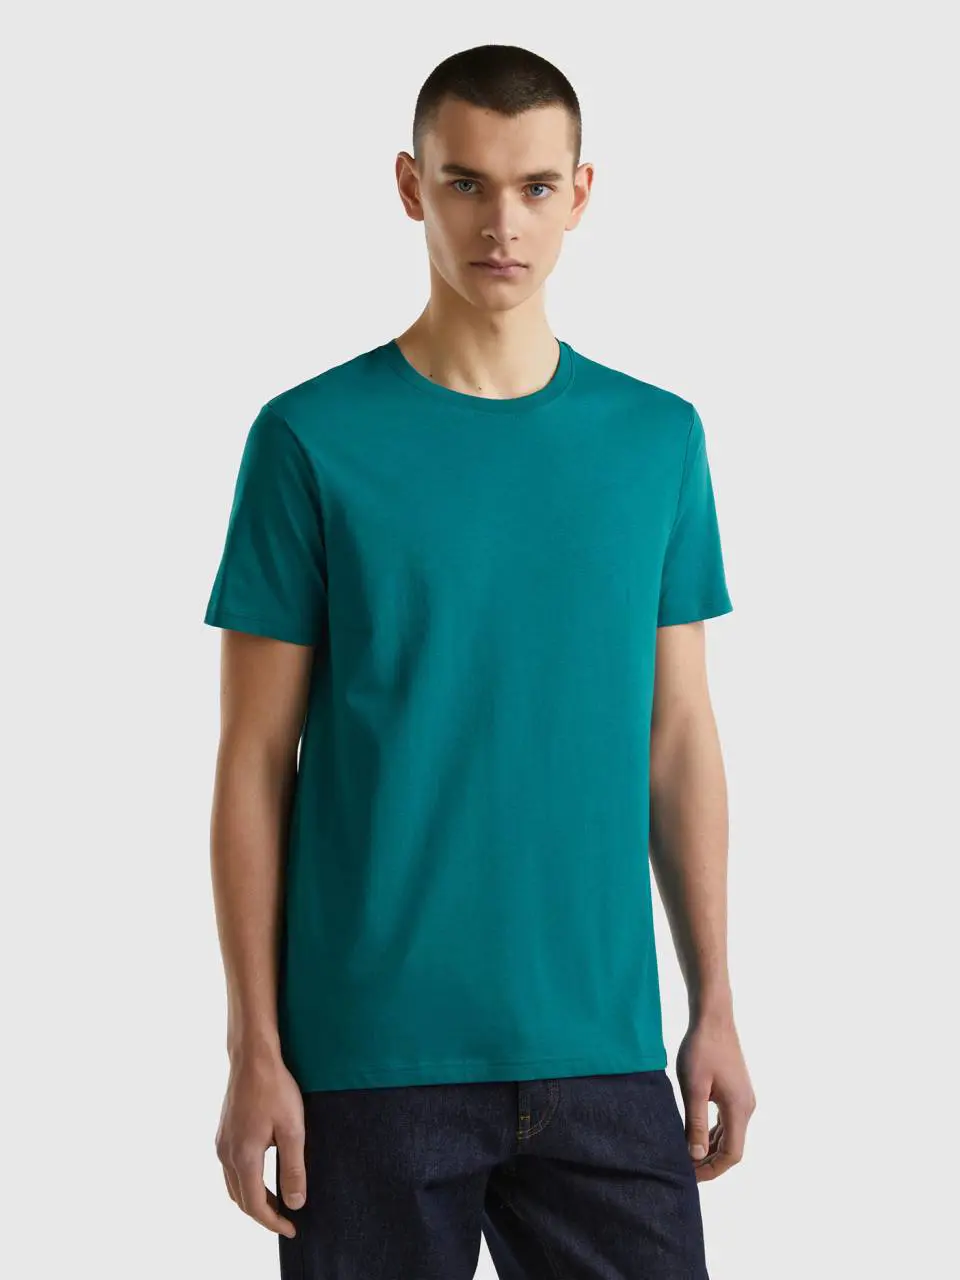 Benetton teal green t-shirt. 1